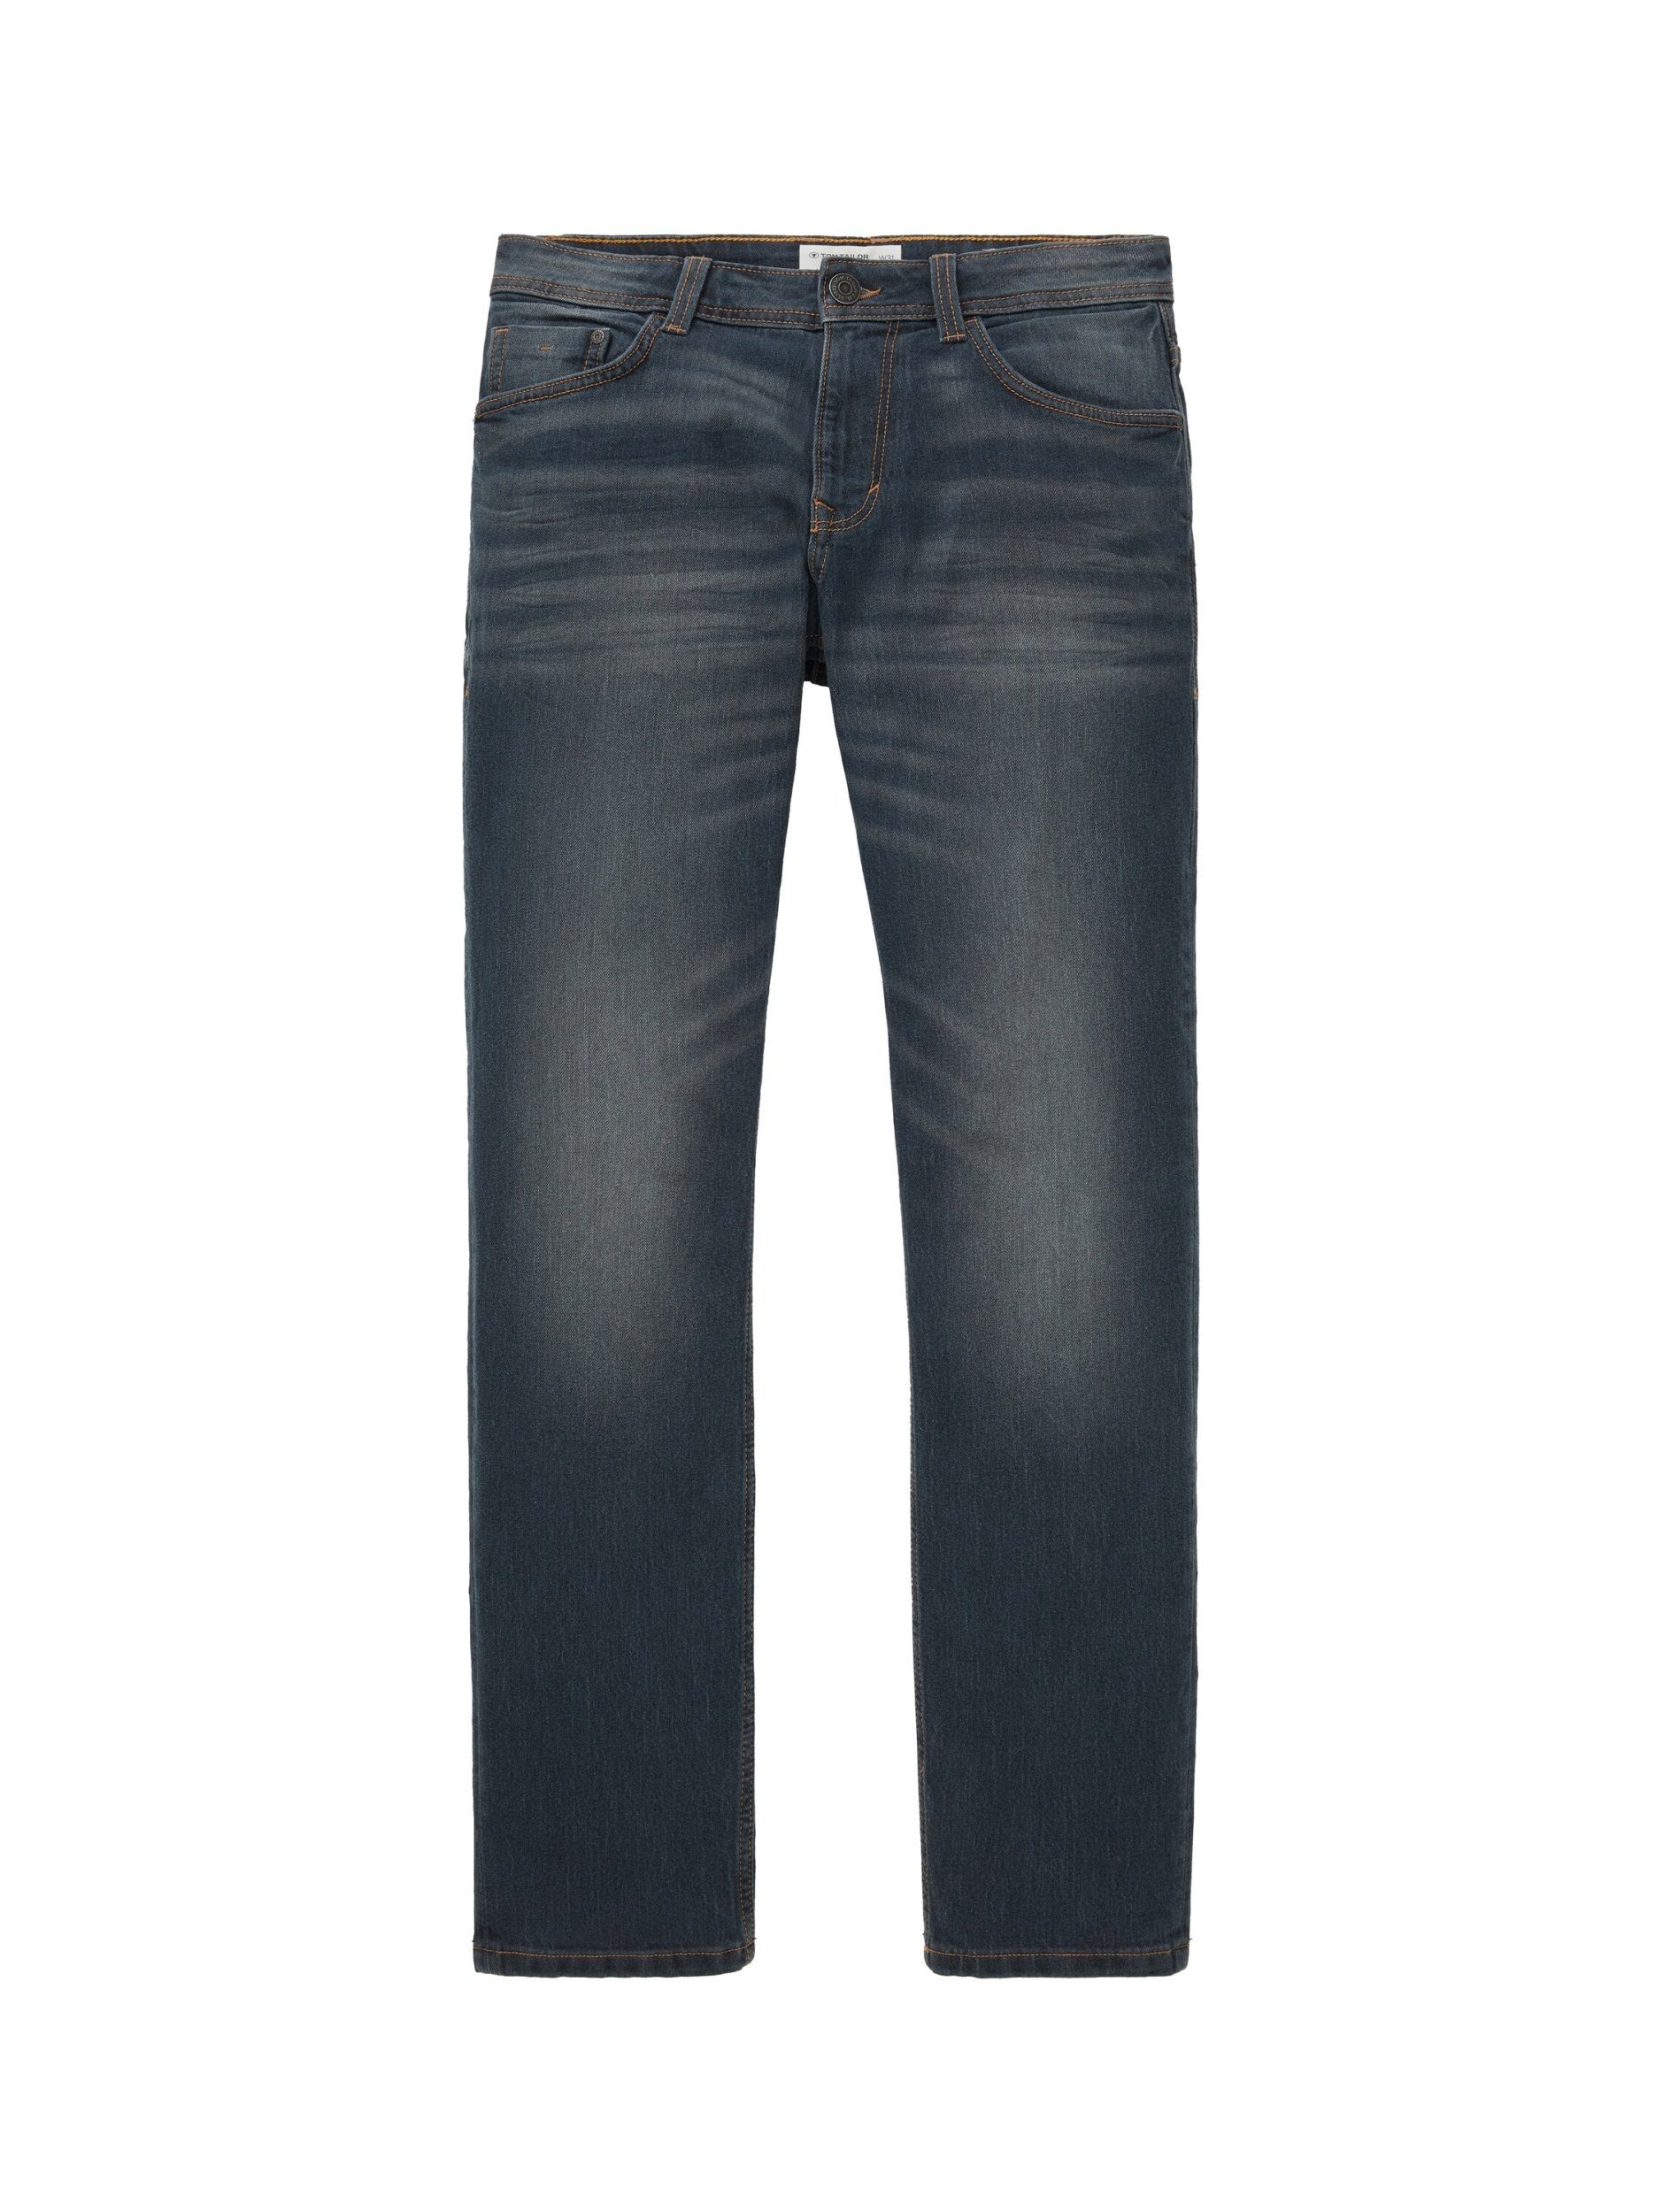 Tailor 5-Pocket-Jeans TAILOR Tom mid stone Marvin denim TOM wash